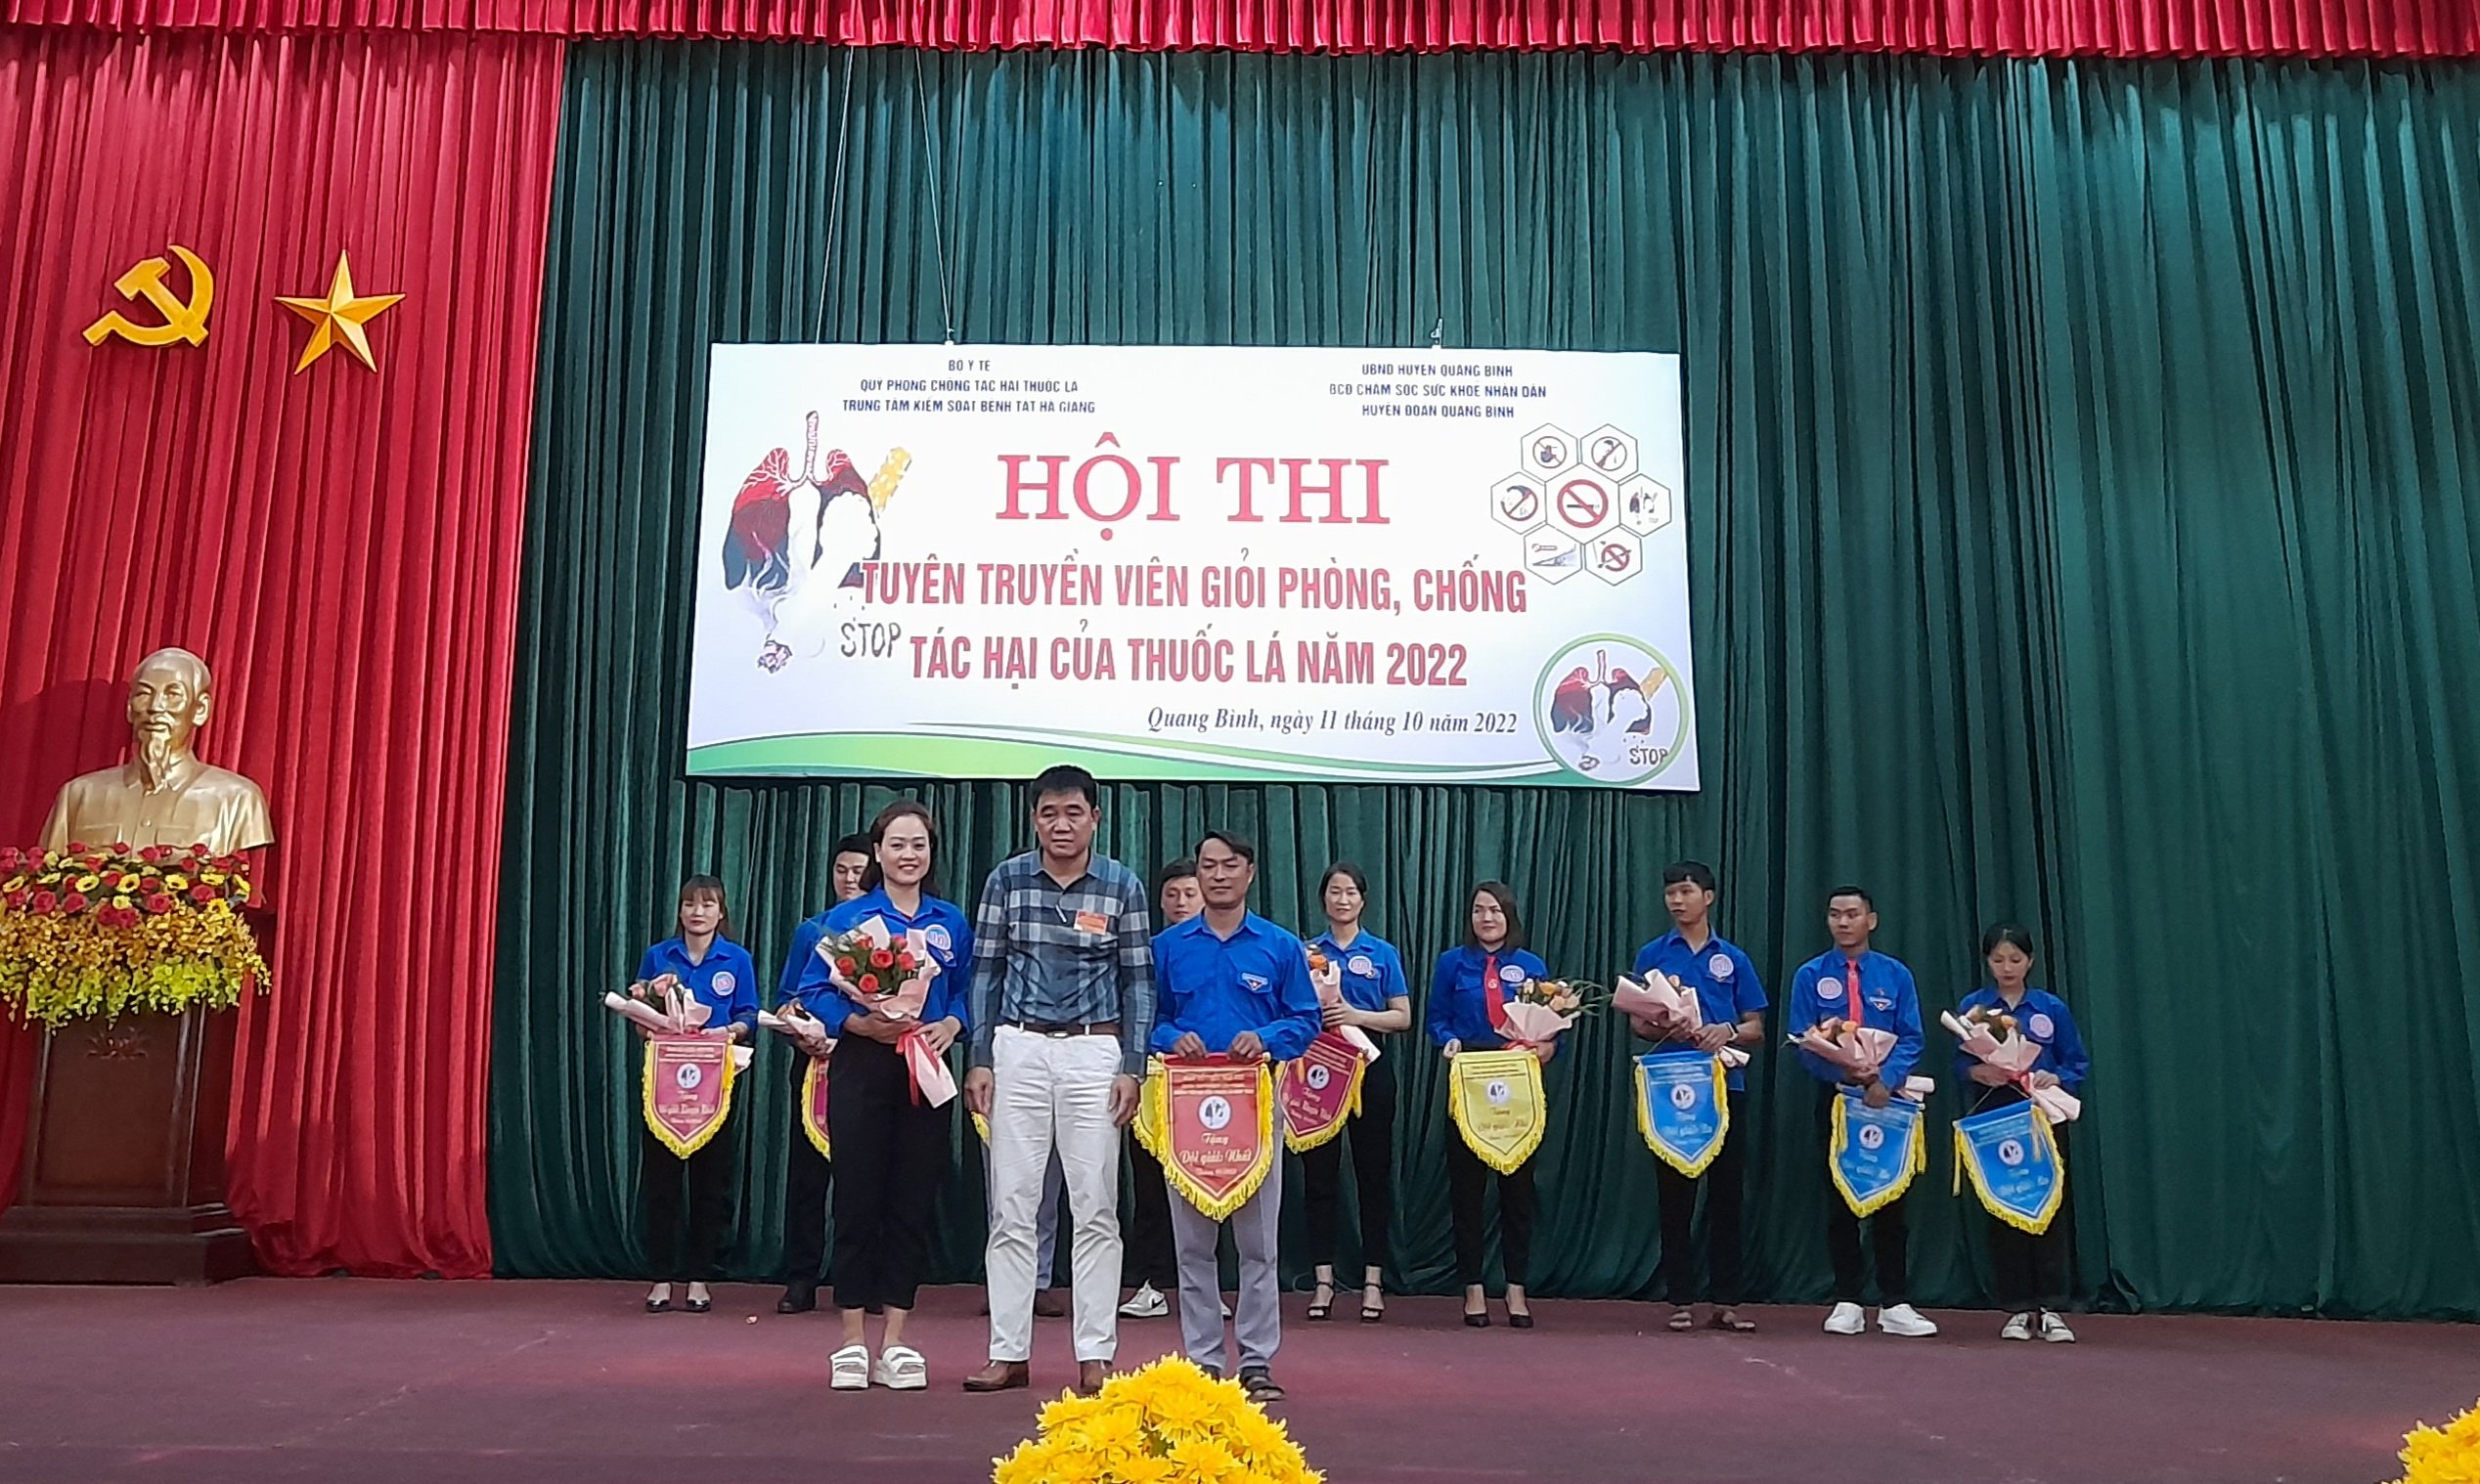 Màn thi chào hỏi - tài năng tại Hội Hội thi tuyên truyền viên giỏi phòng, chống tác hại thuốc lá huyện Quang Bình năm 2022